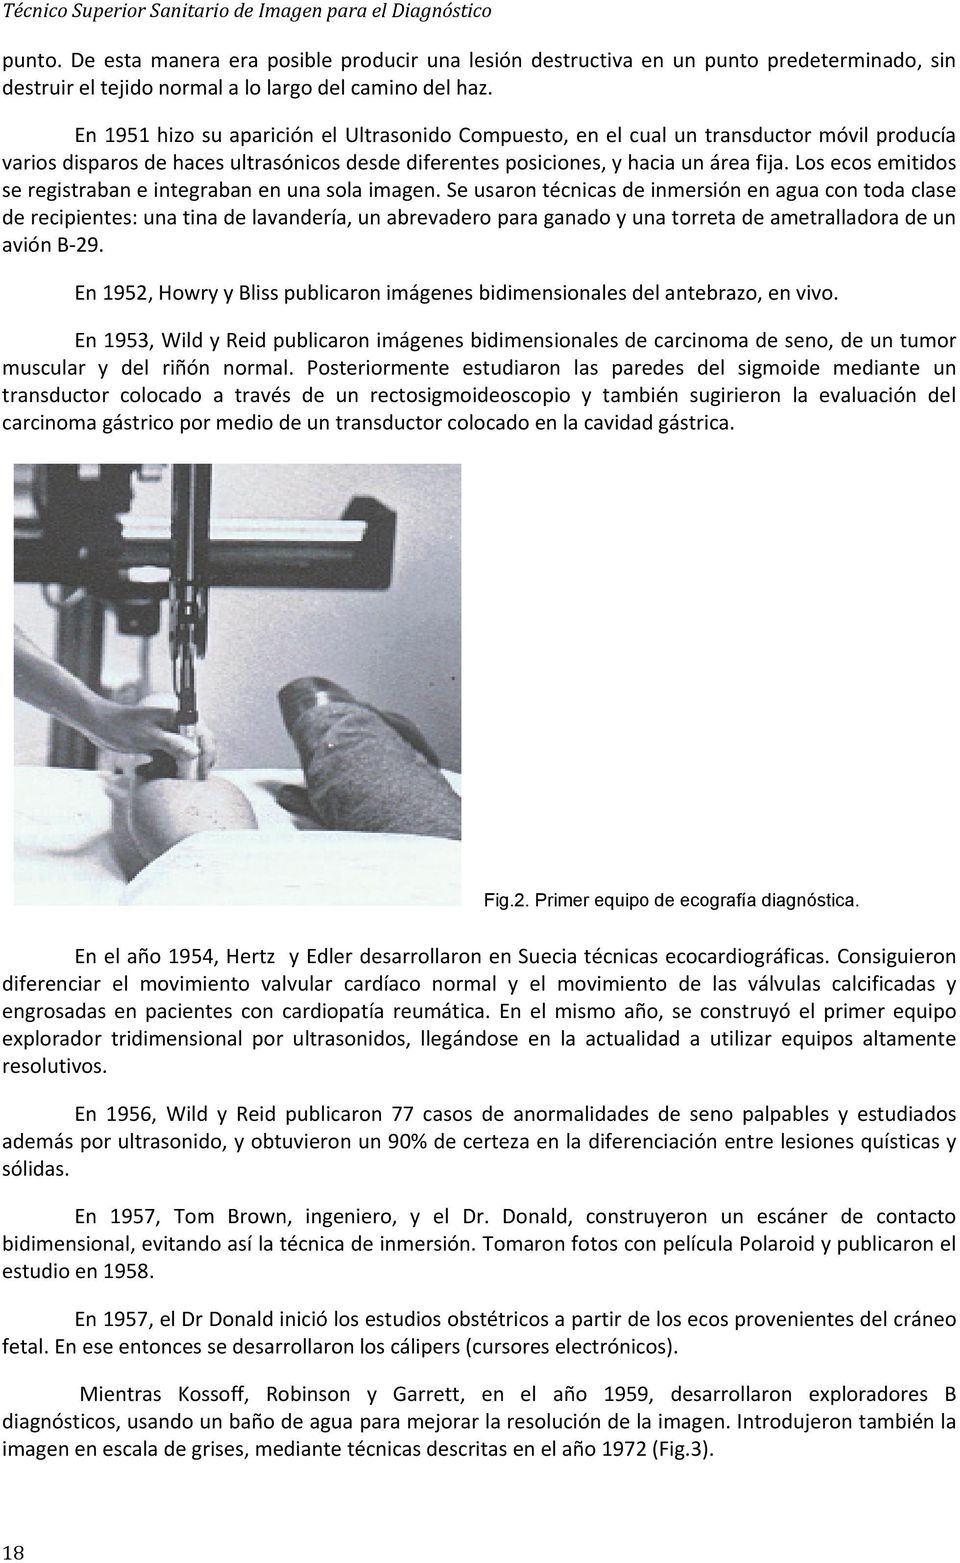 En 1951 hizo su aparición el Ultrasonido Compuesto, en el cual un transductor móvil producía varios disparos de haces ultrasónicos desde diferentes posiciones, y hacia un área fija.